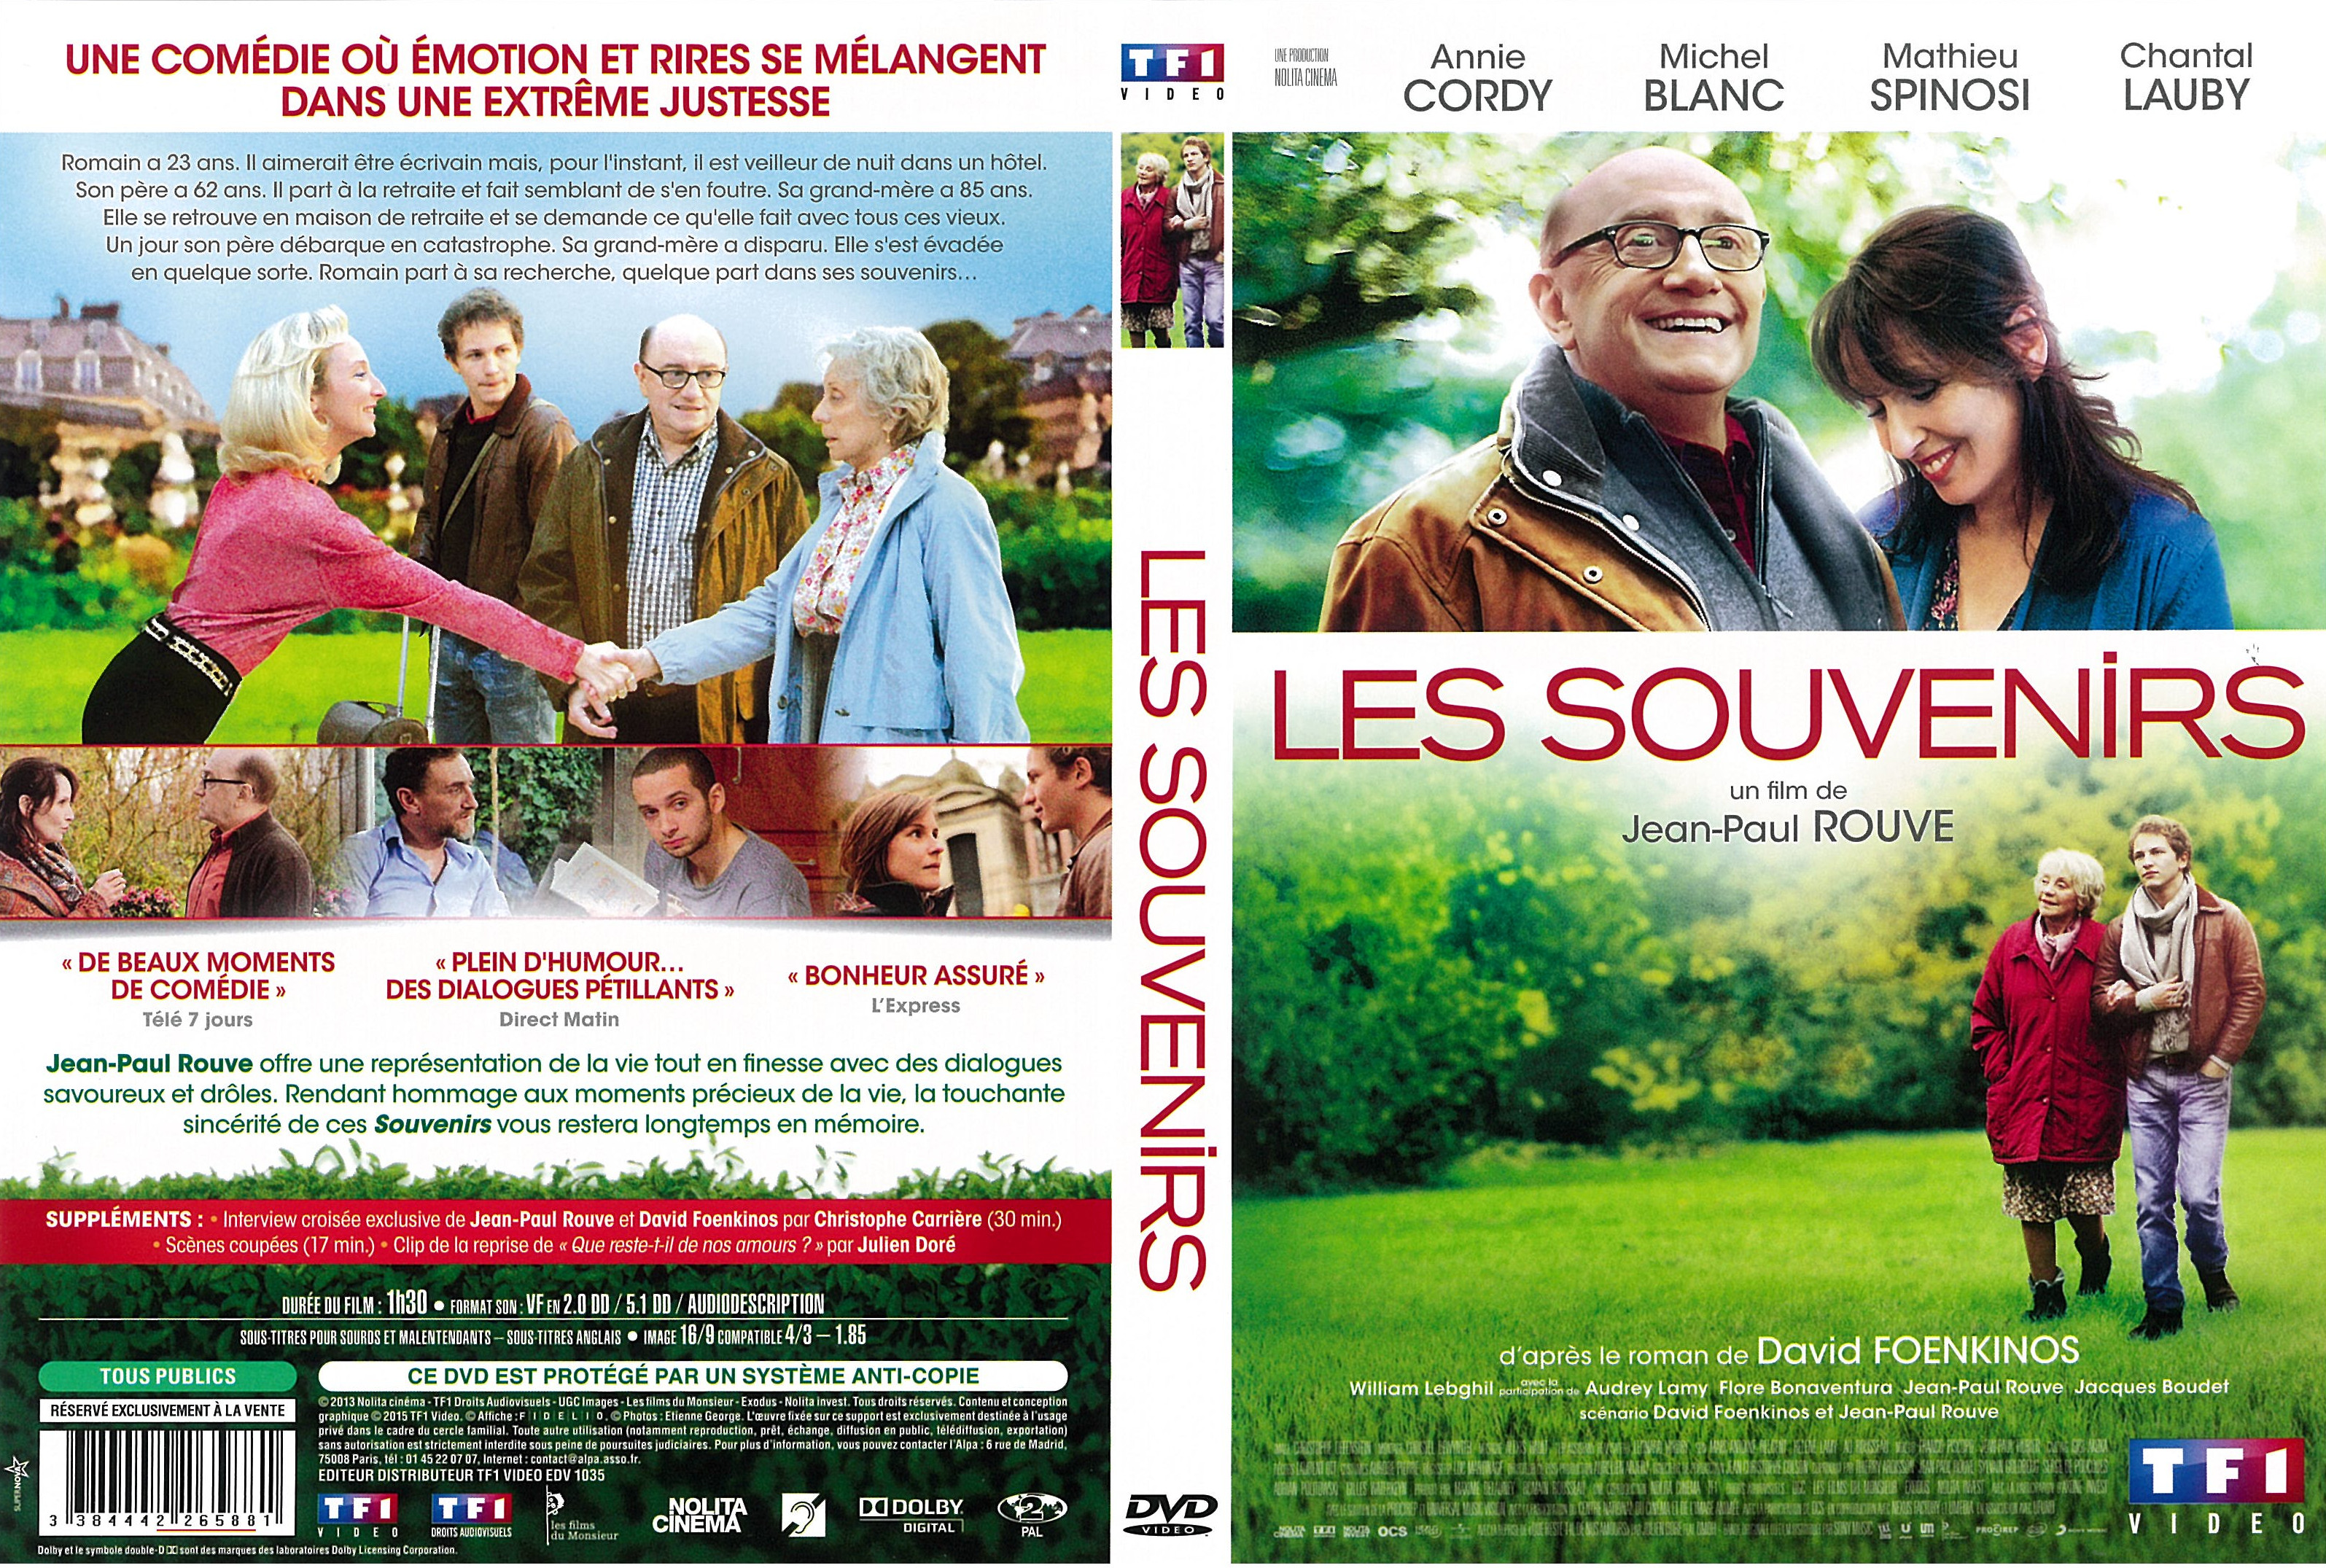 Jaquette DVD Les Souvenirs